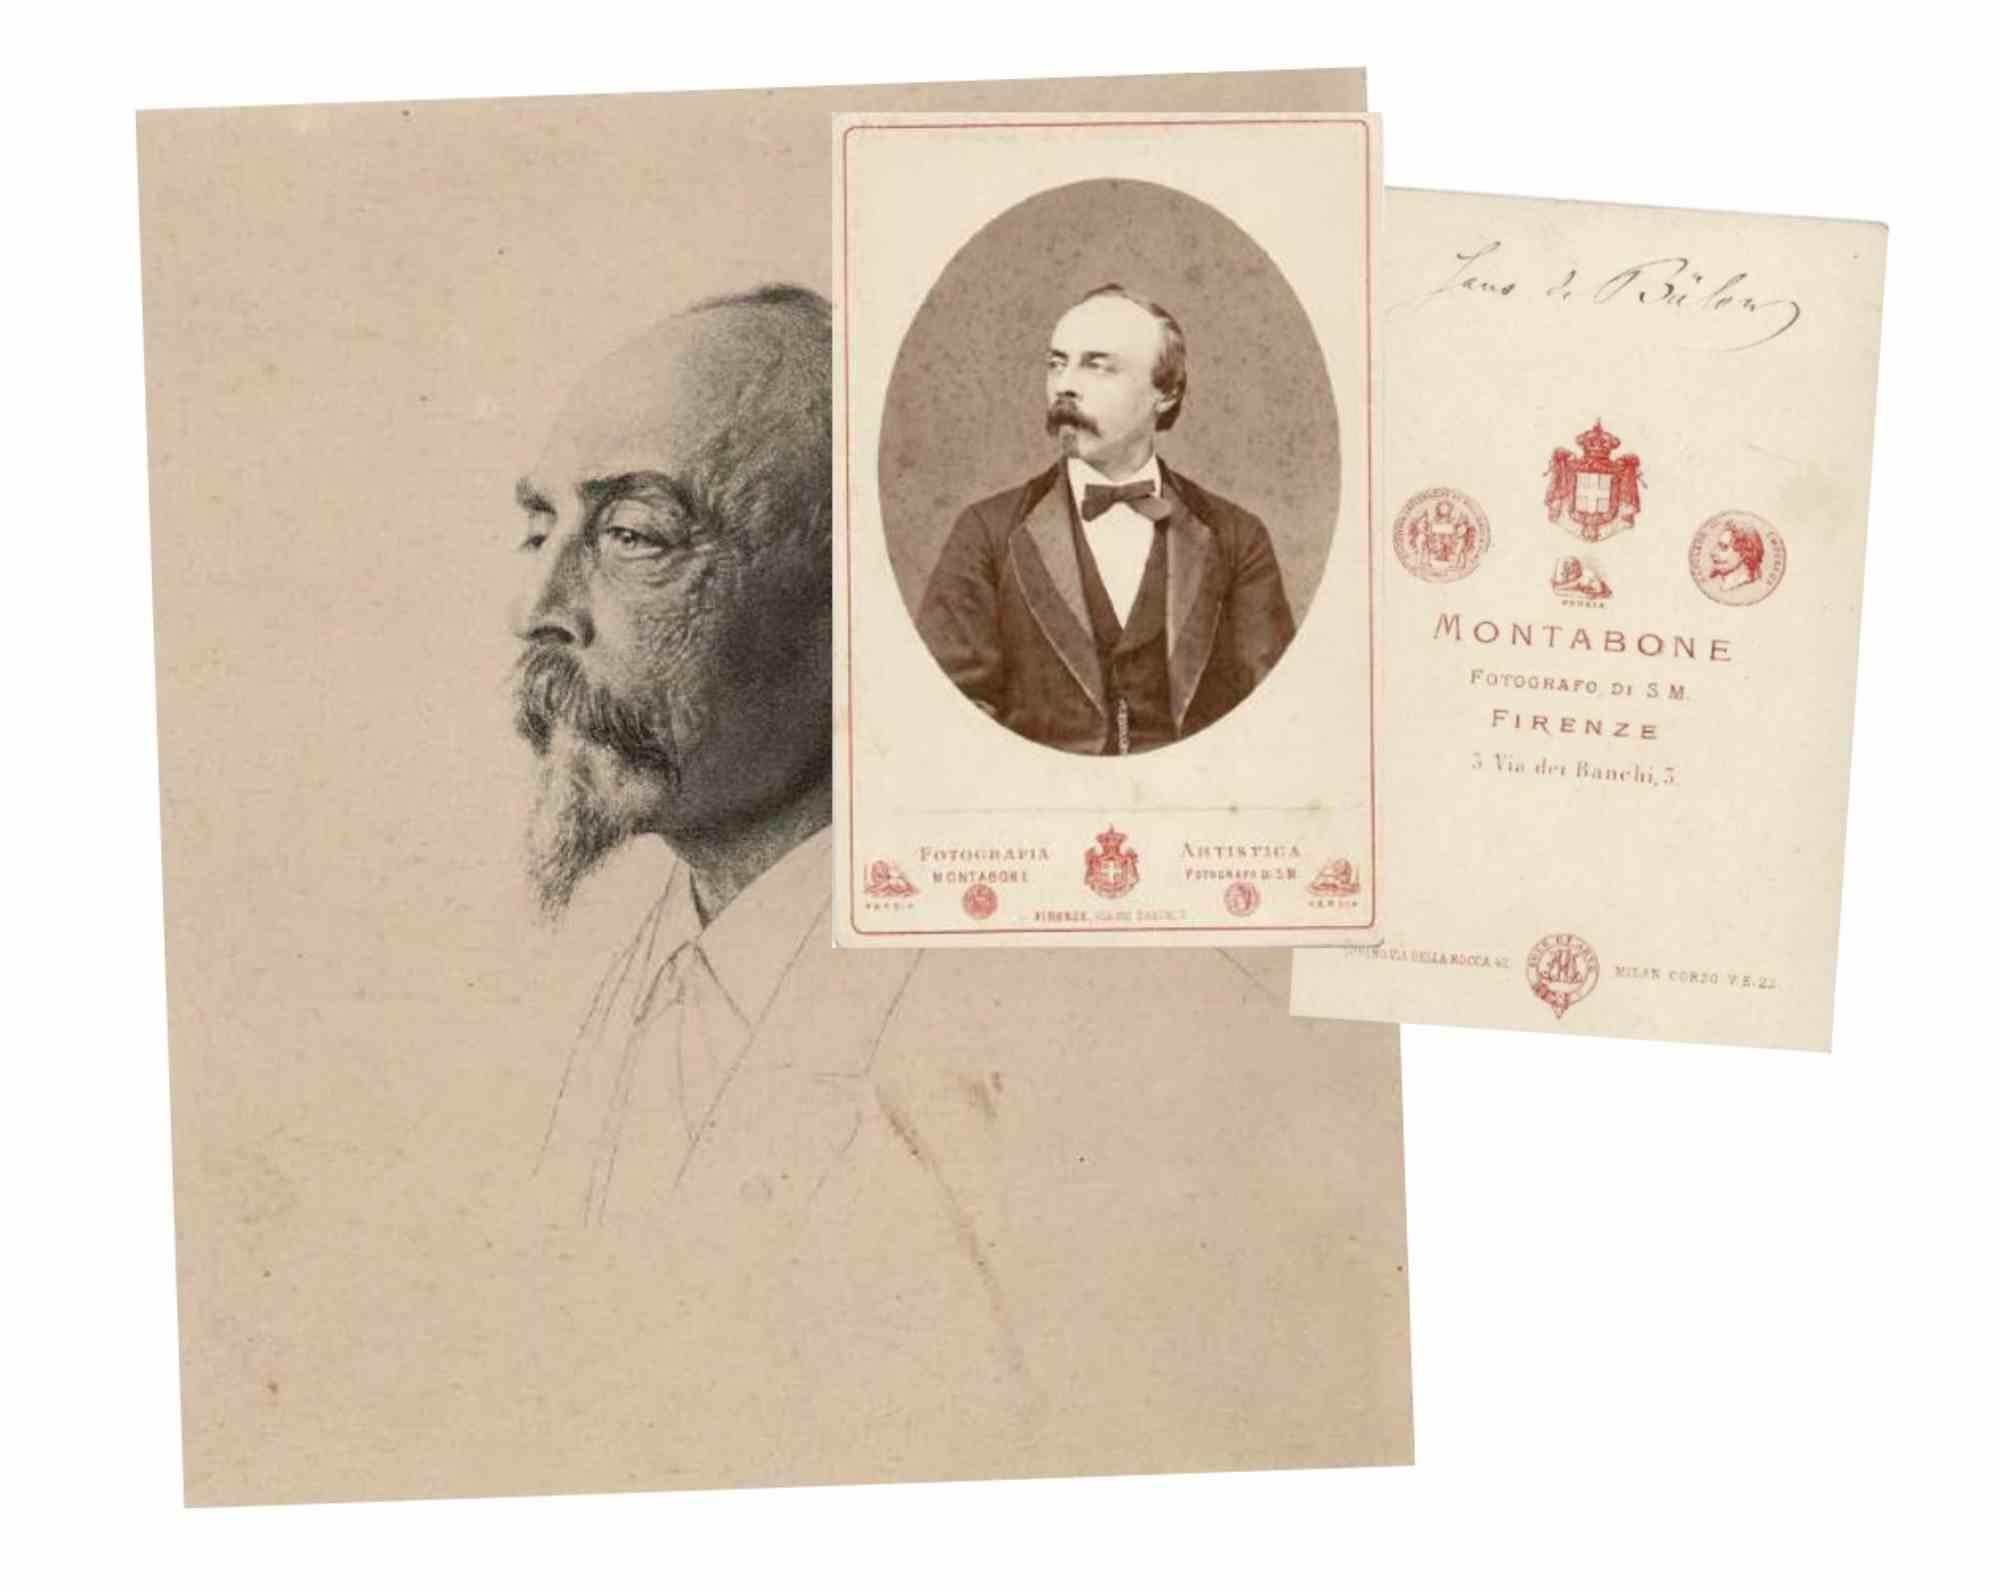 Unknown Figurative Photograph - Photographic Portrait and Autograph by Hans von Bülow - 19th Century